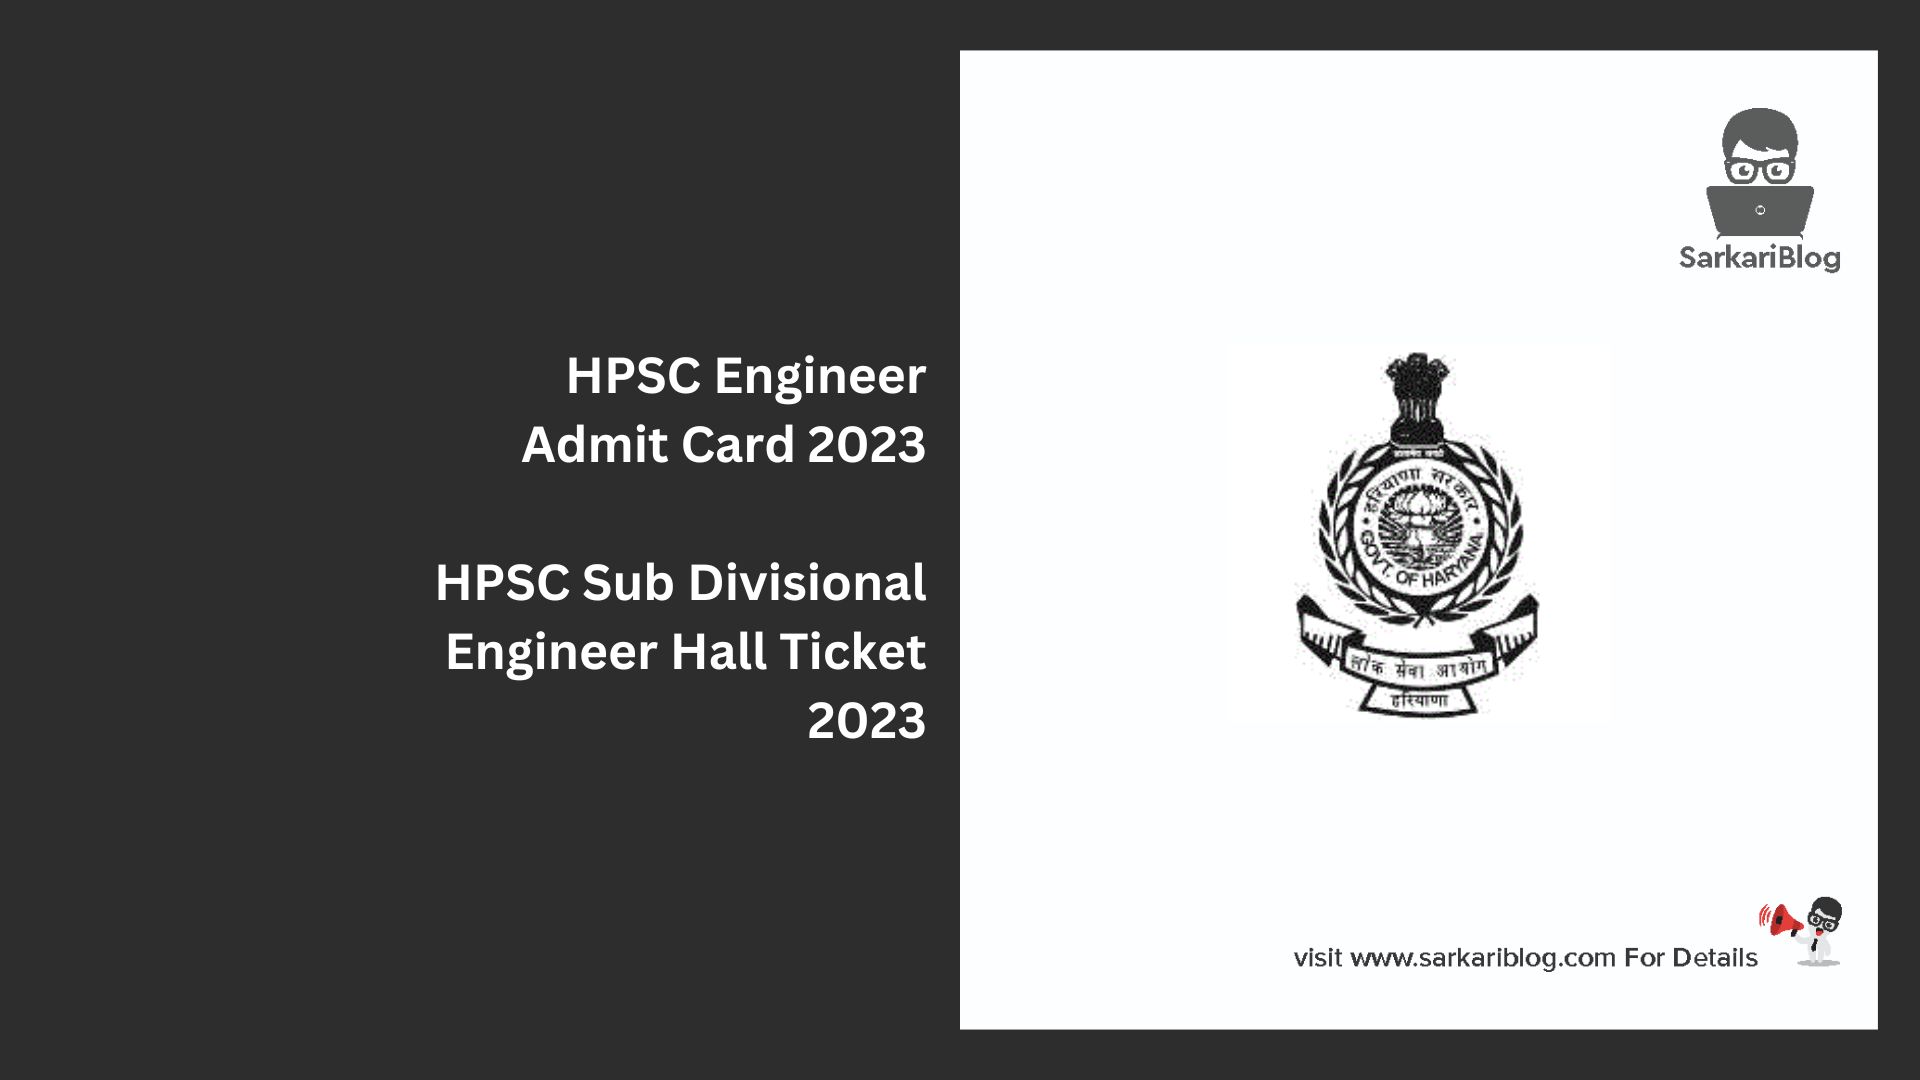 HPSC Engineer Admit Card 2023